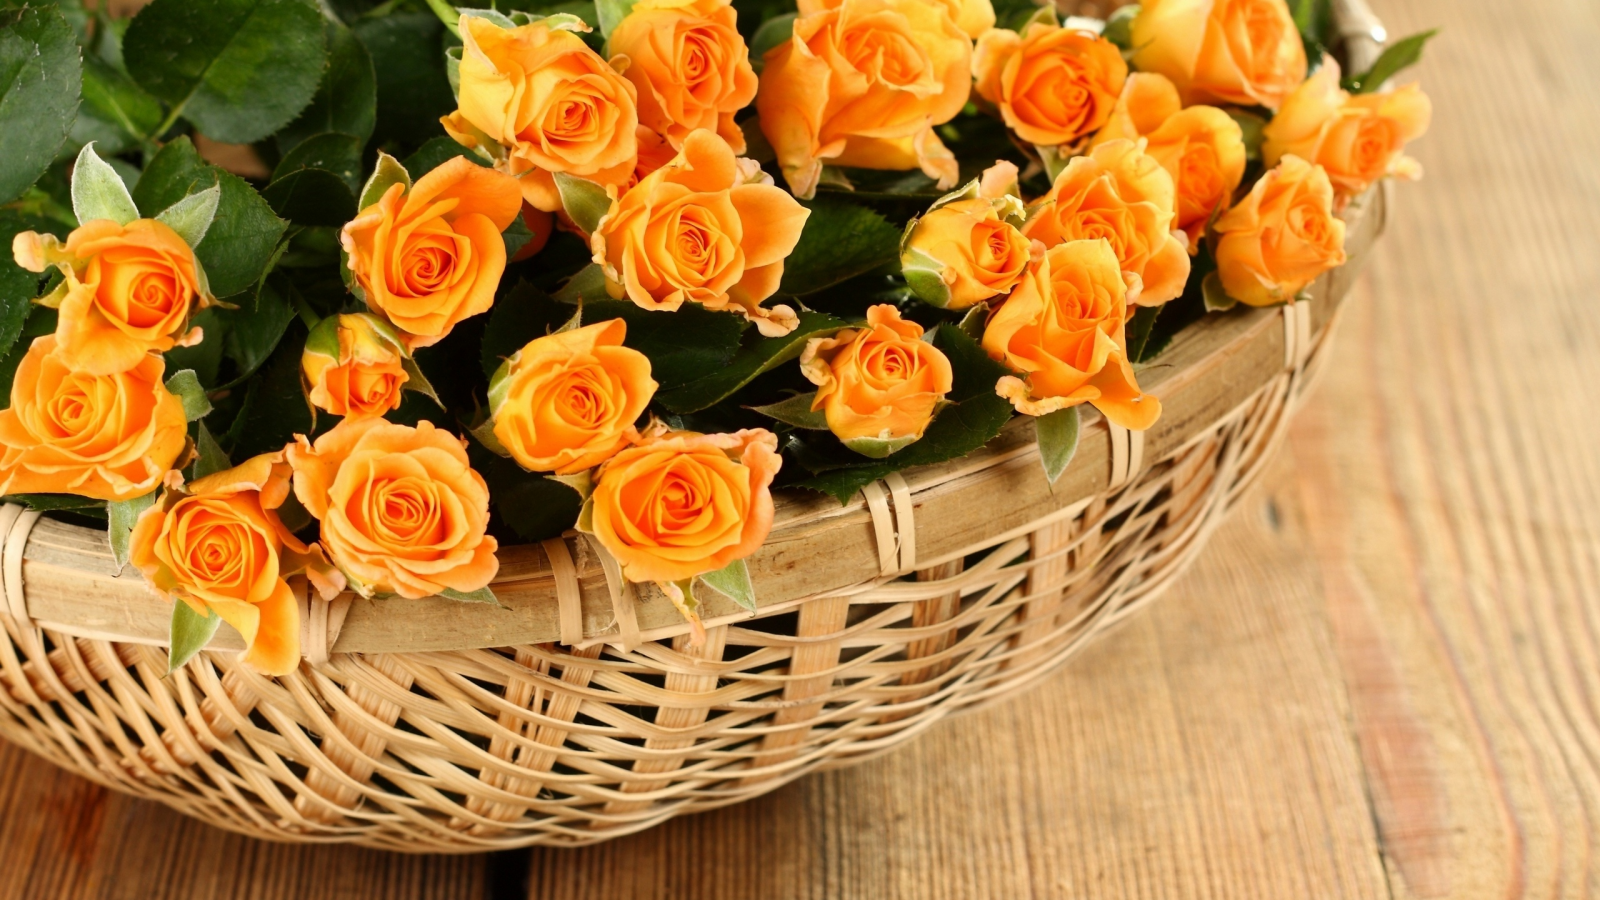 roses, basket, flowers, розы, rose, petals, корзины